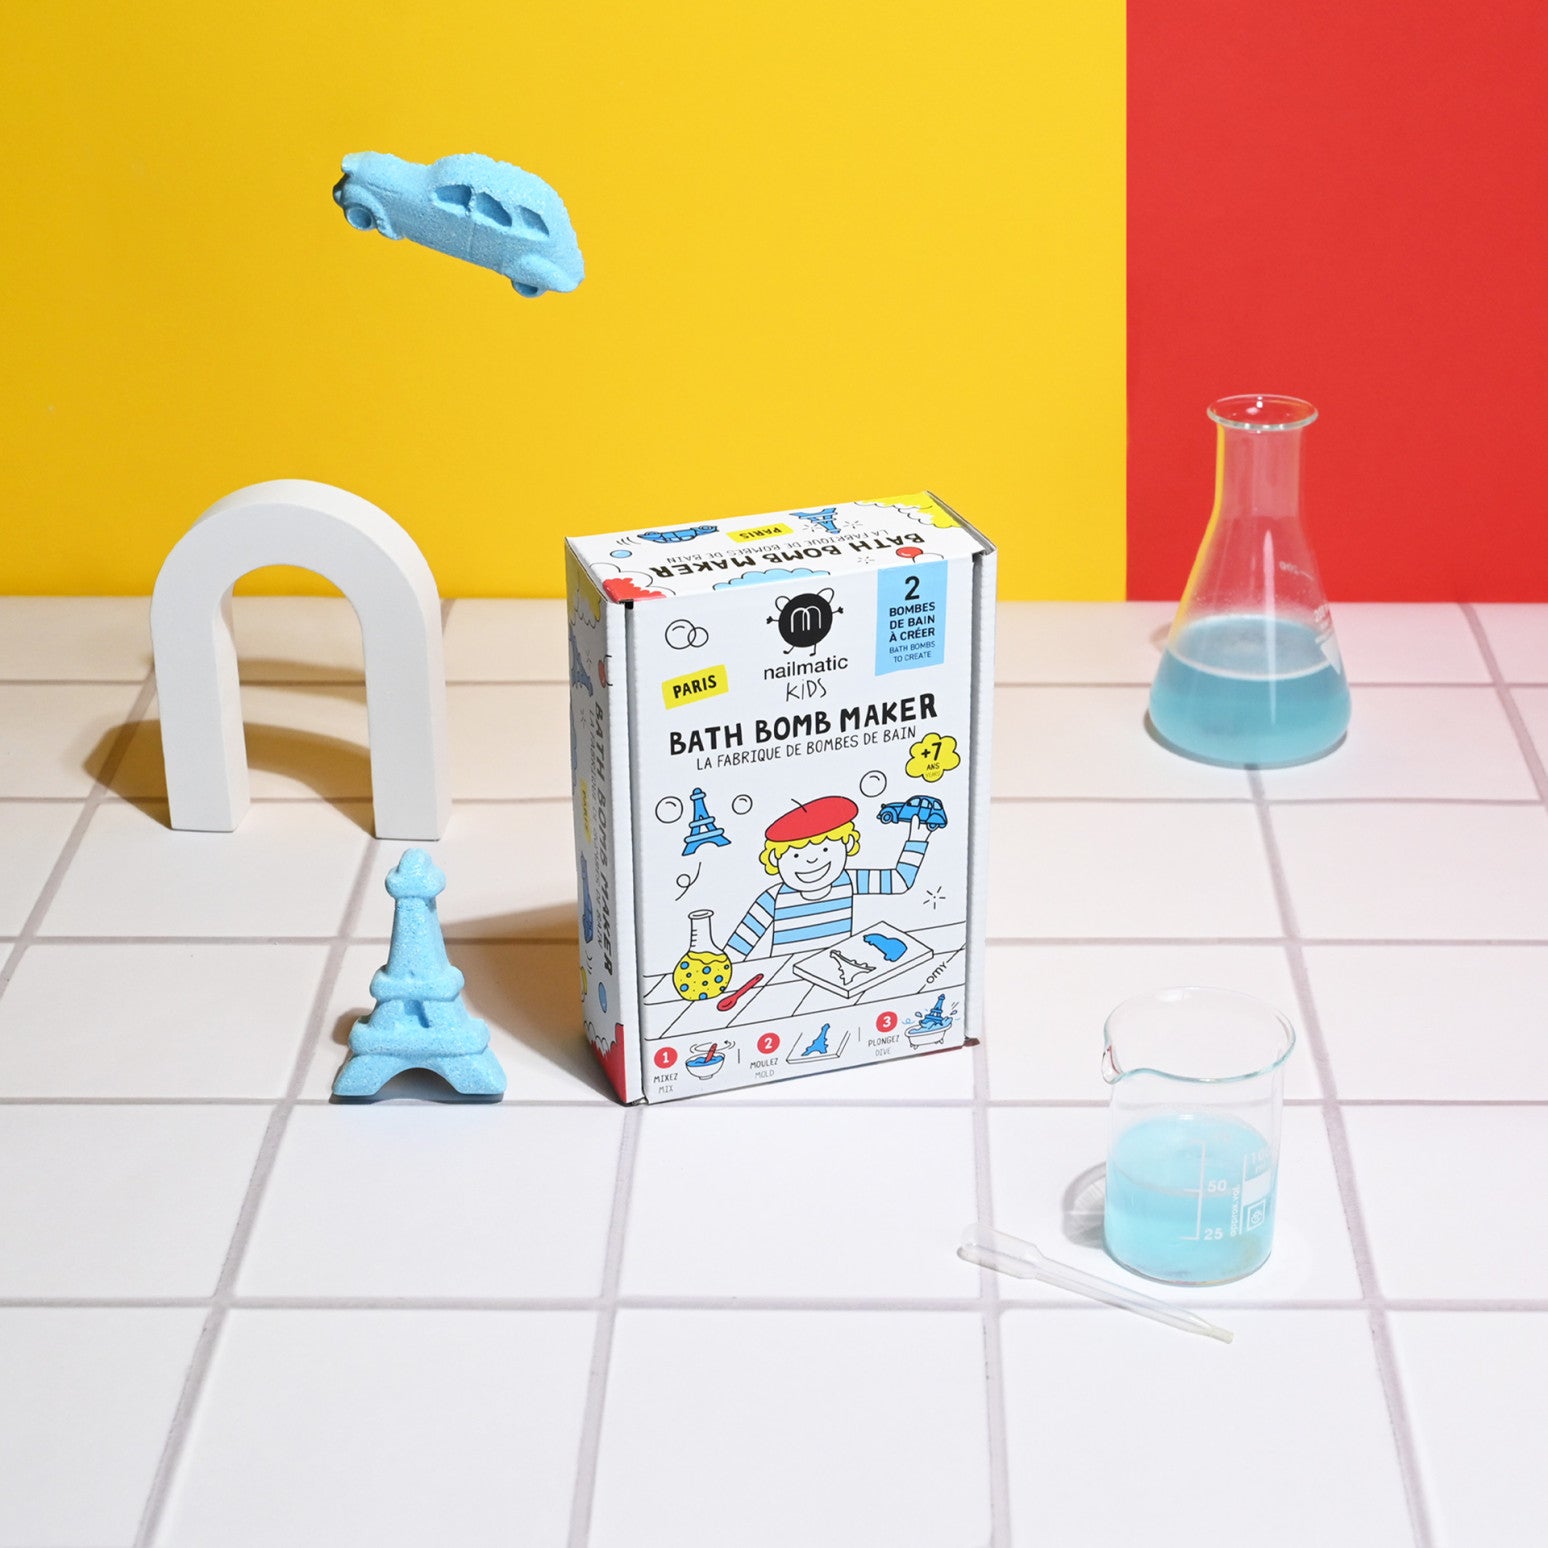 Fabriquer ses propres bombes de bain ? Ce kit Nailmatic est parfait pour  une activité ludique et manuelle avec vos enfants